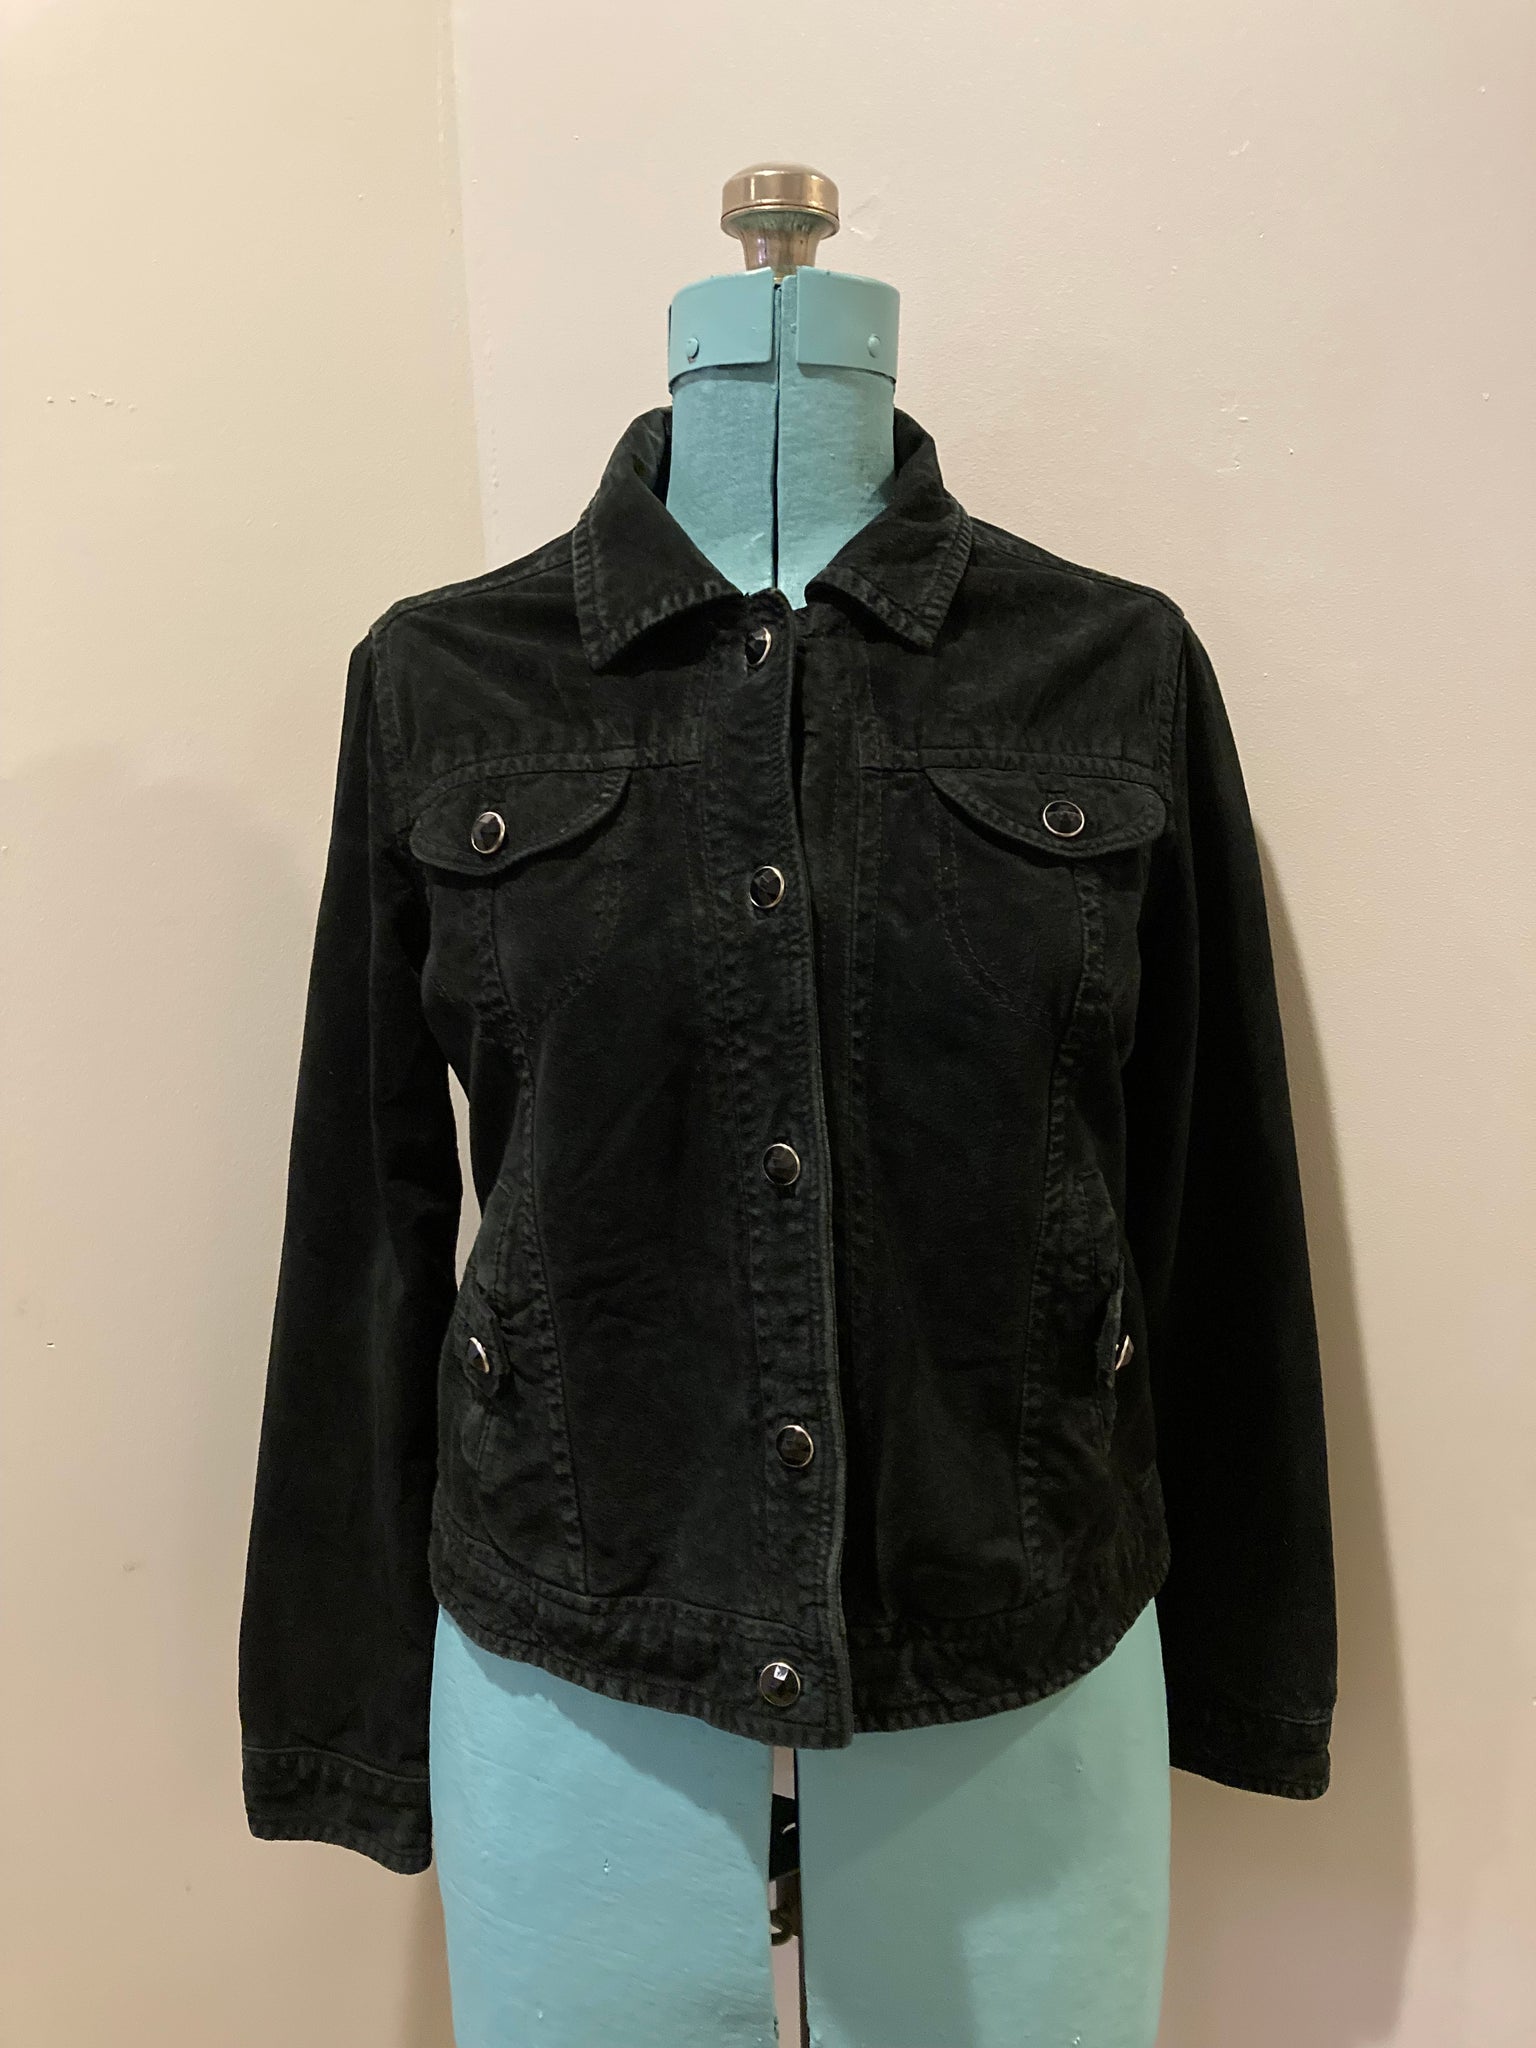 Vintage Christopher Banks Black Suede Jacket, Made in Canada – KingsPIER  vintage